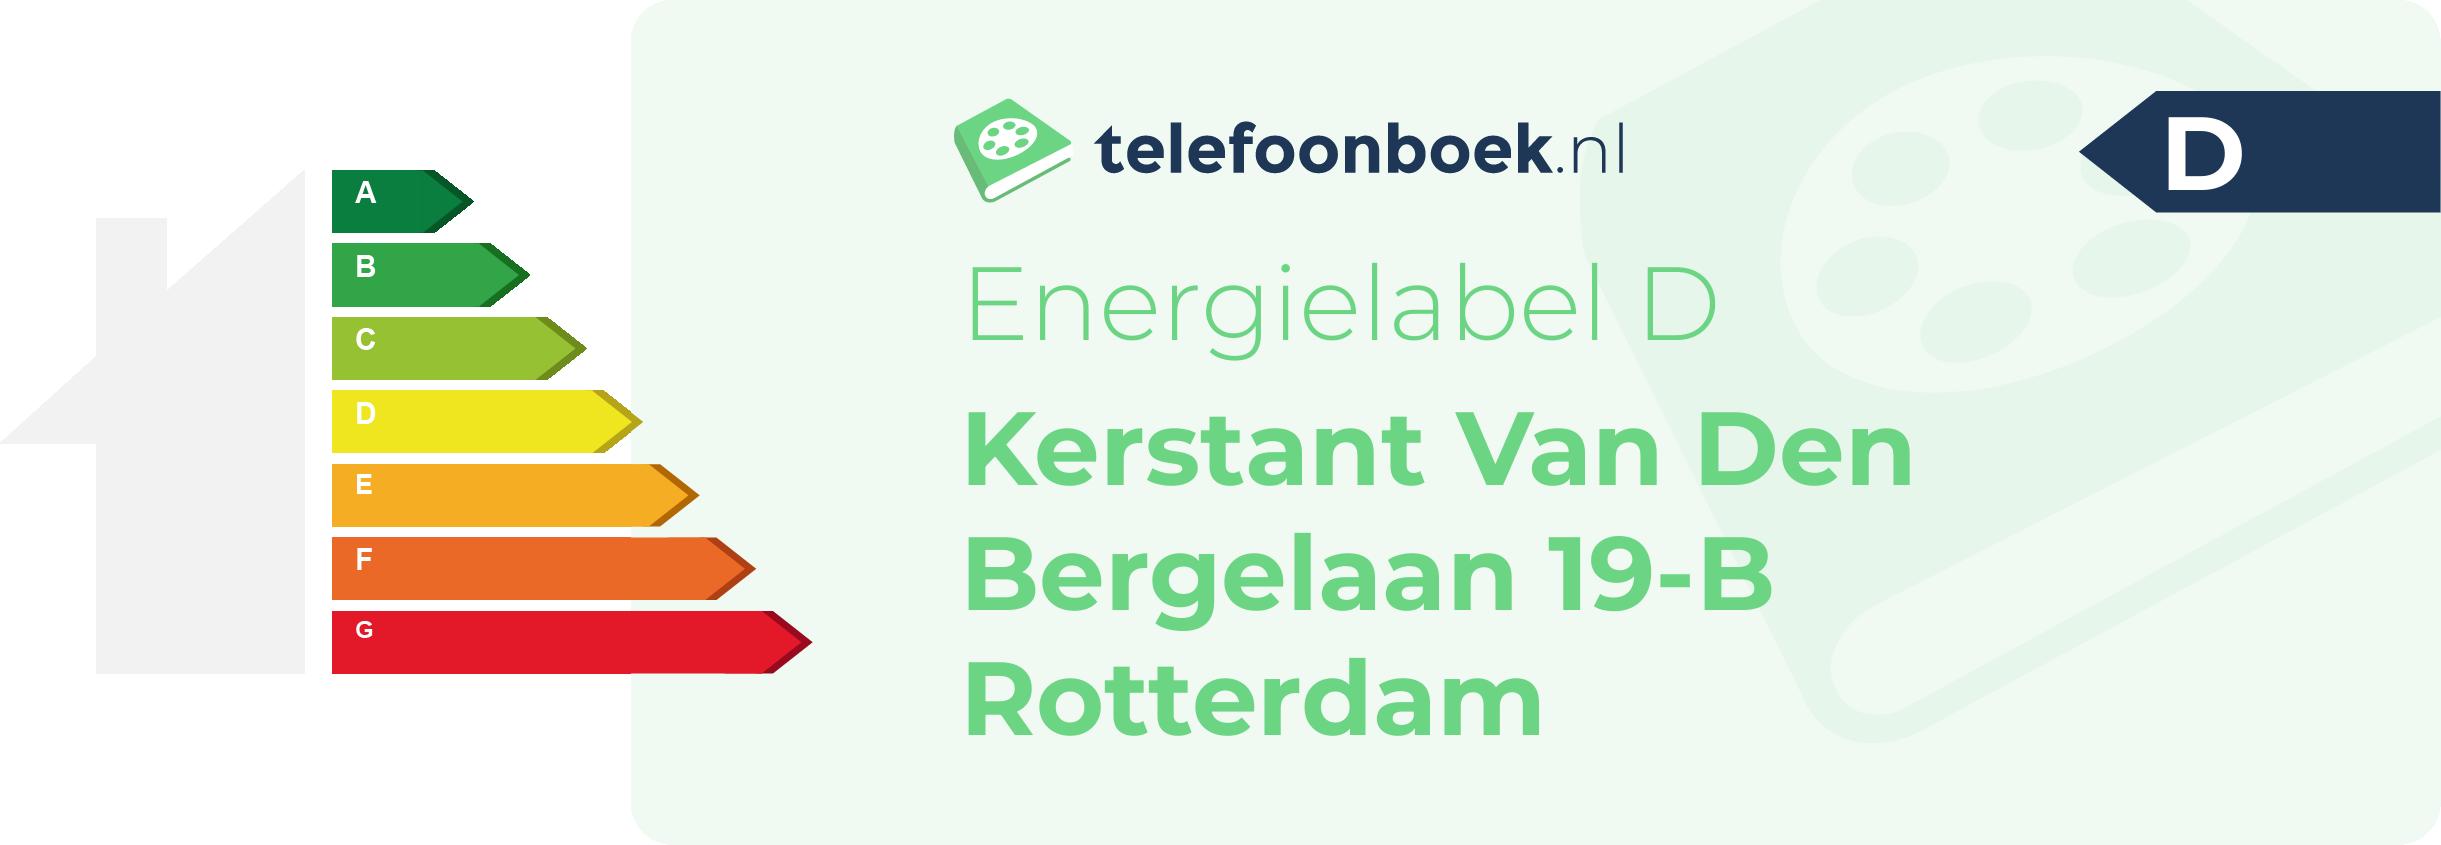 Energielabel Kerstant Van Den Bergelaan 19-B Rotterdam